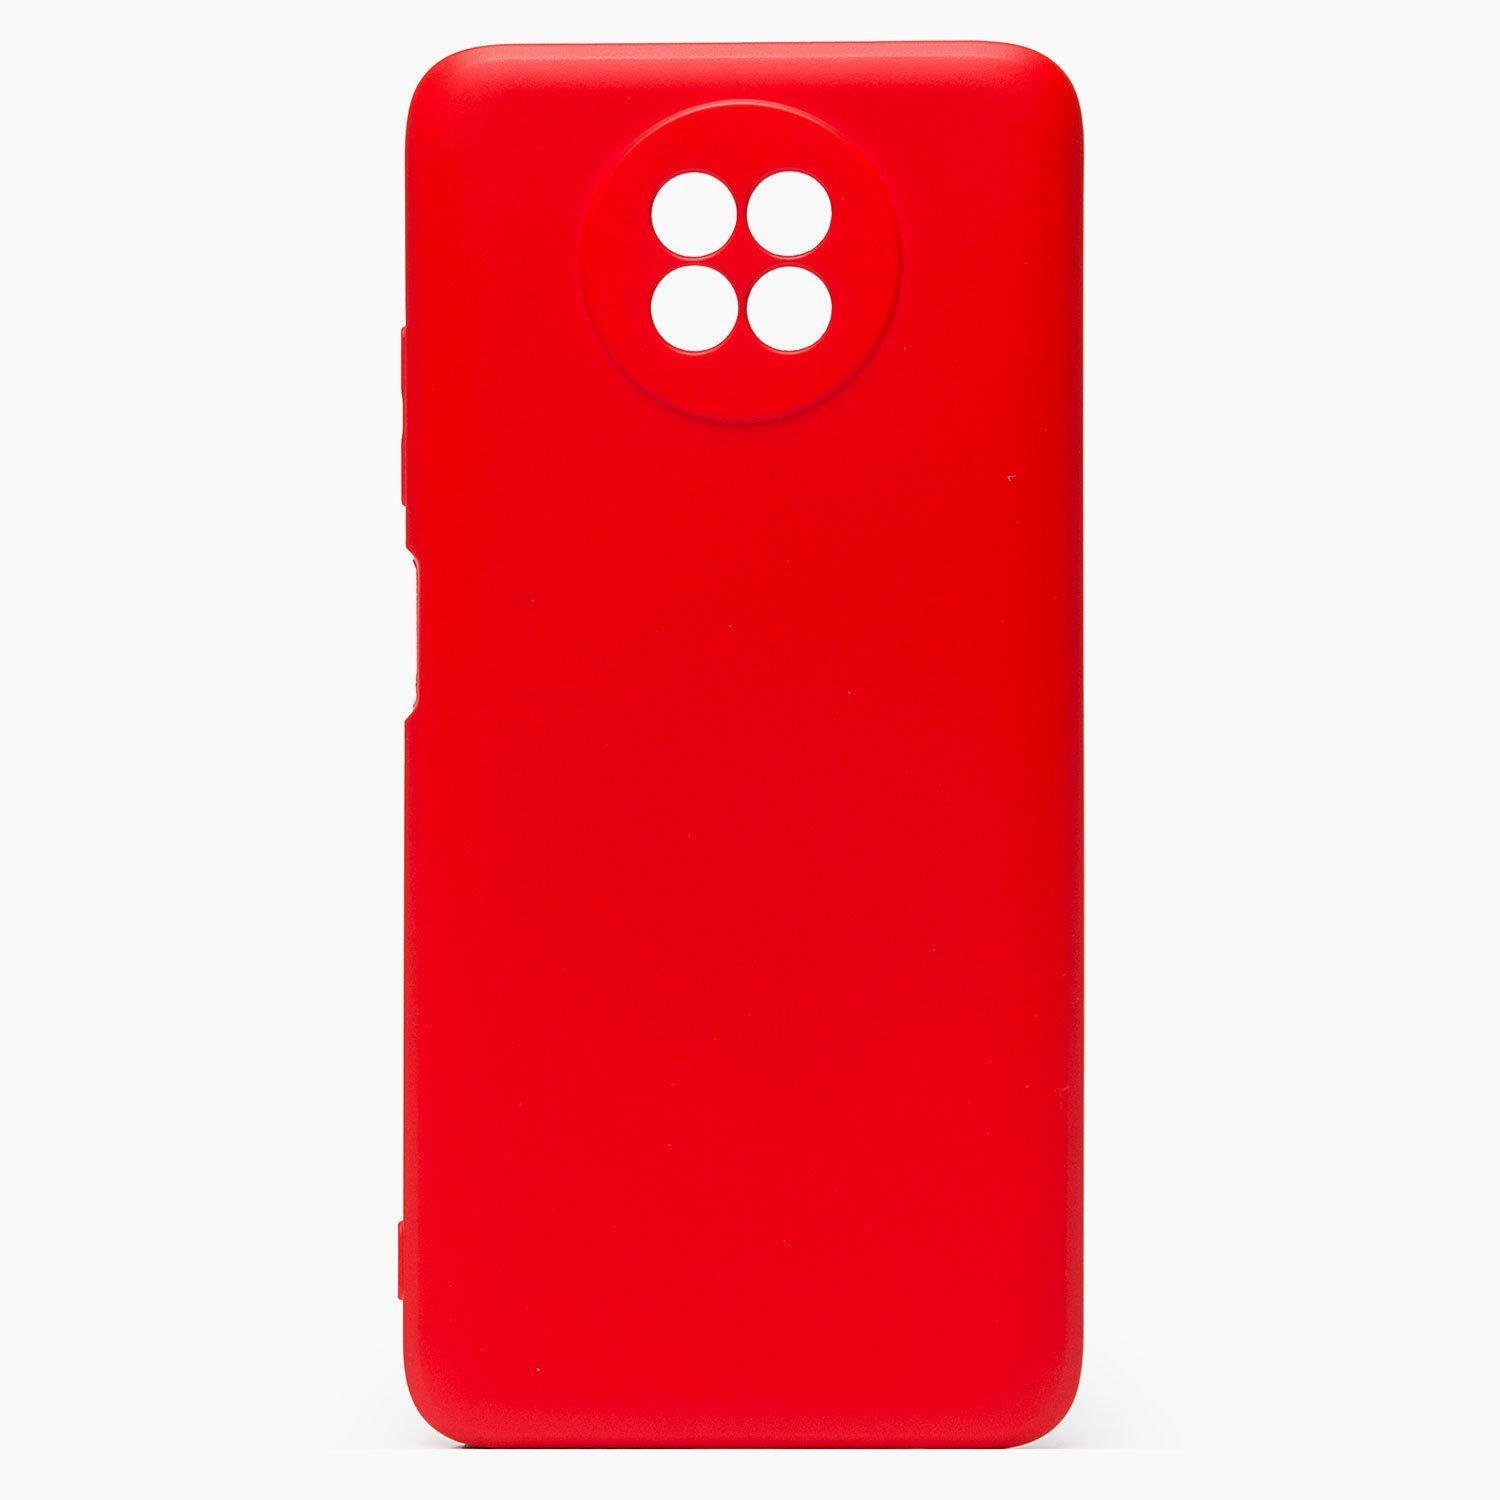 Чехол-накладка Activ Full Original Design для смартфона Xiaomi Redmi Note 9T, силикон, красный